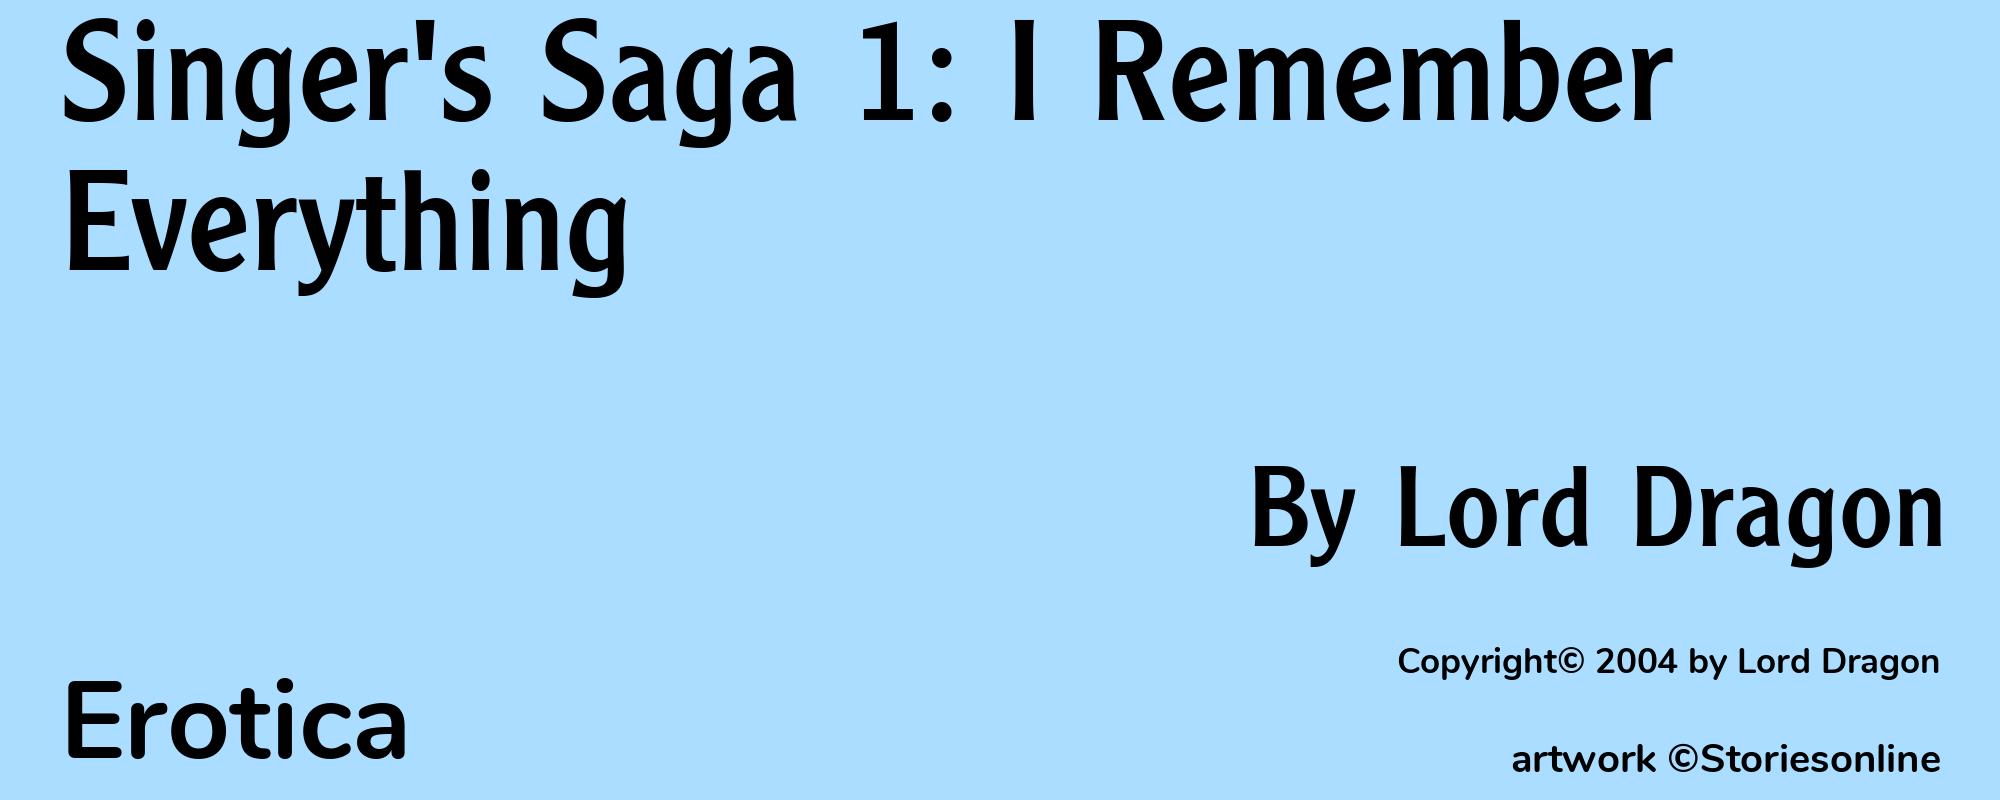 Singer's Saga 1: I Remember Everything - Cover